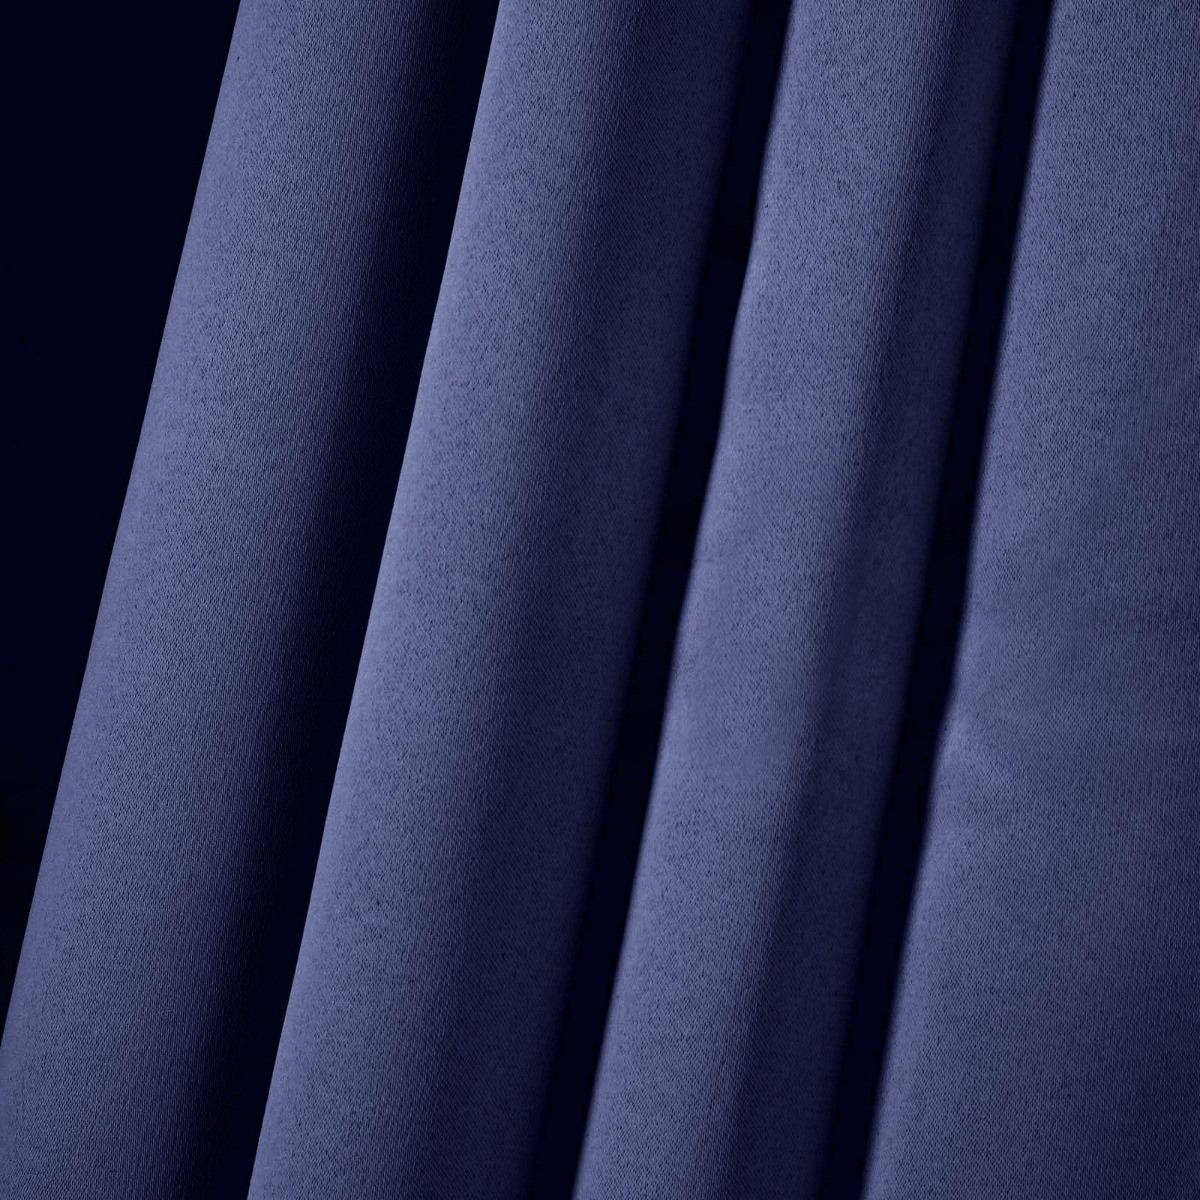 Dreamscene Eyelet Blackout Curtains, Navy - 117 x 137cm (46" x 54")>